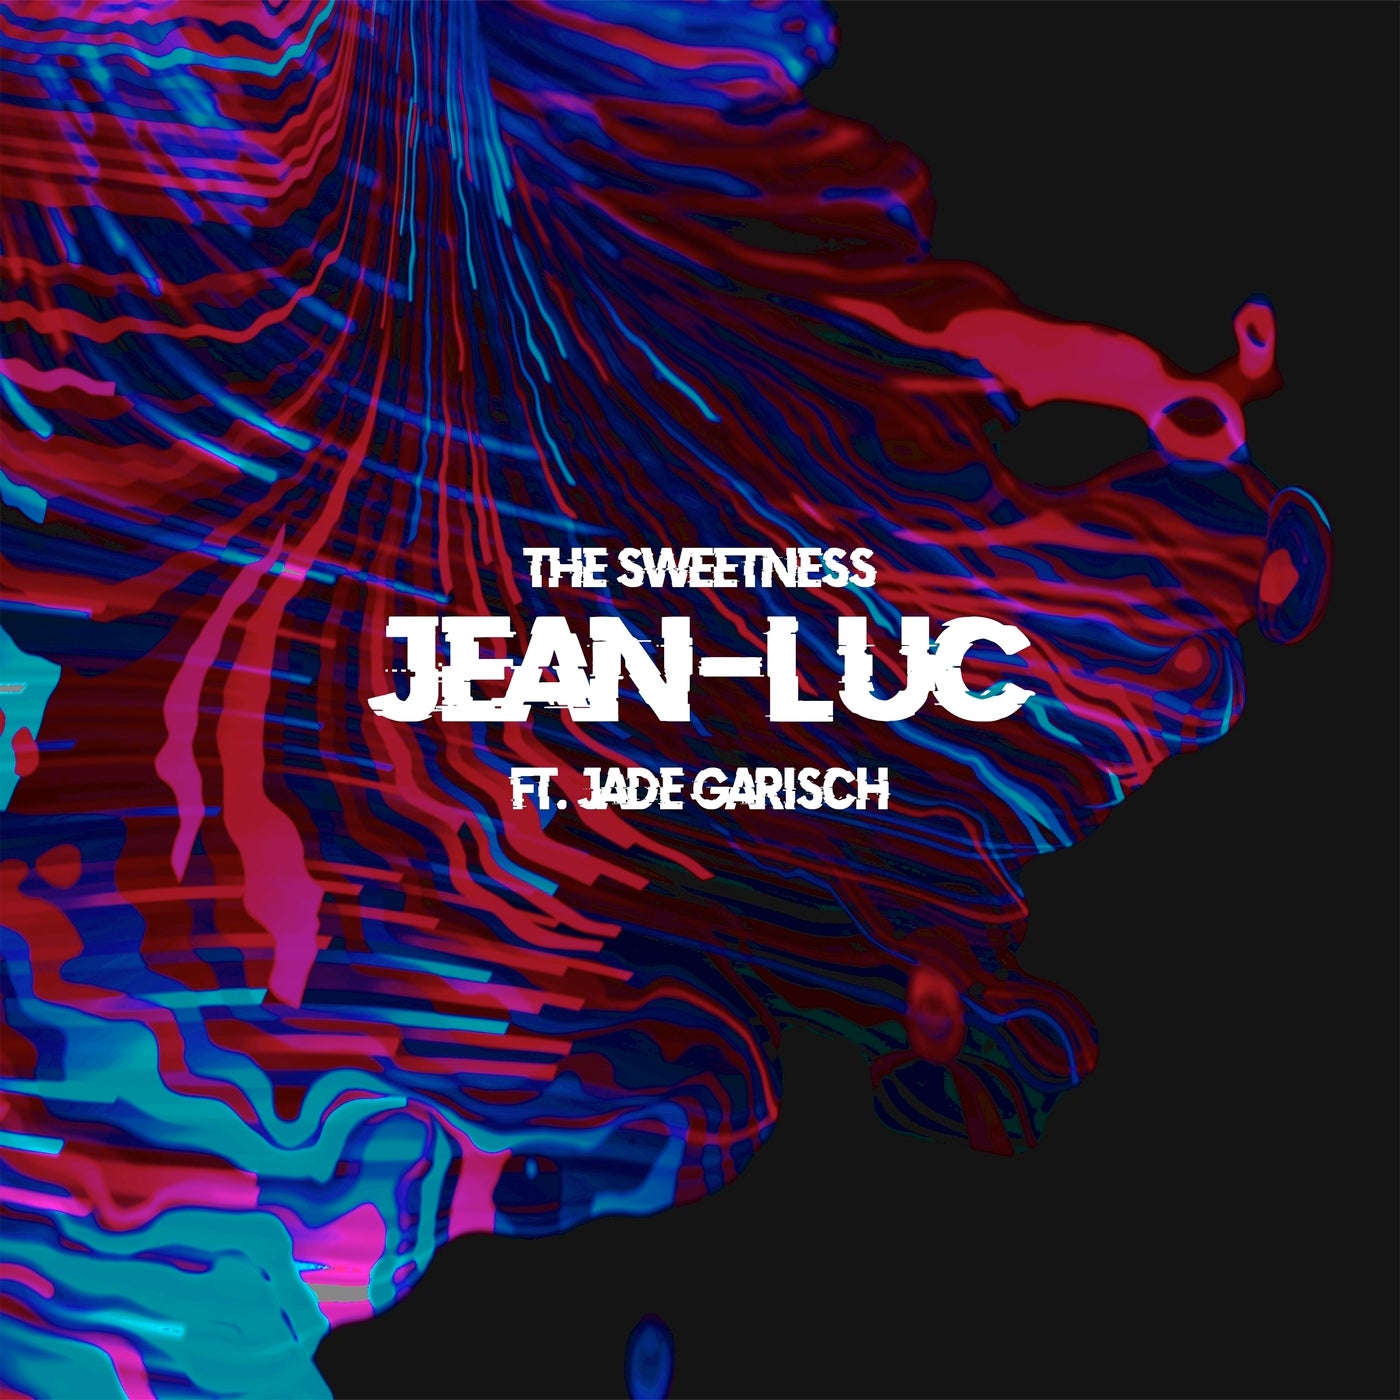 Jean–Luc, Jade Garisch – The Sweetness (feat. Jade Garisch) [1597703]